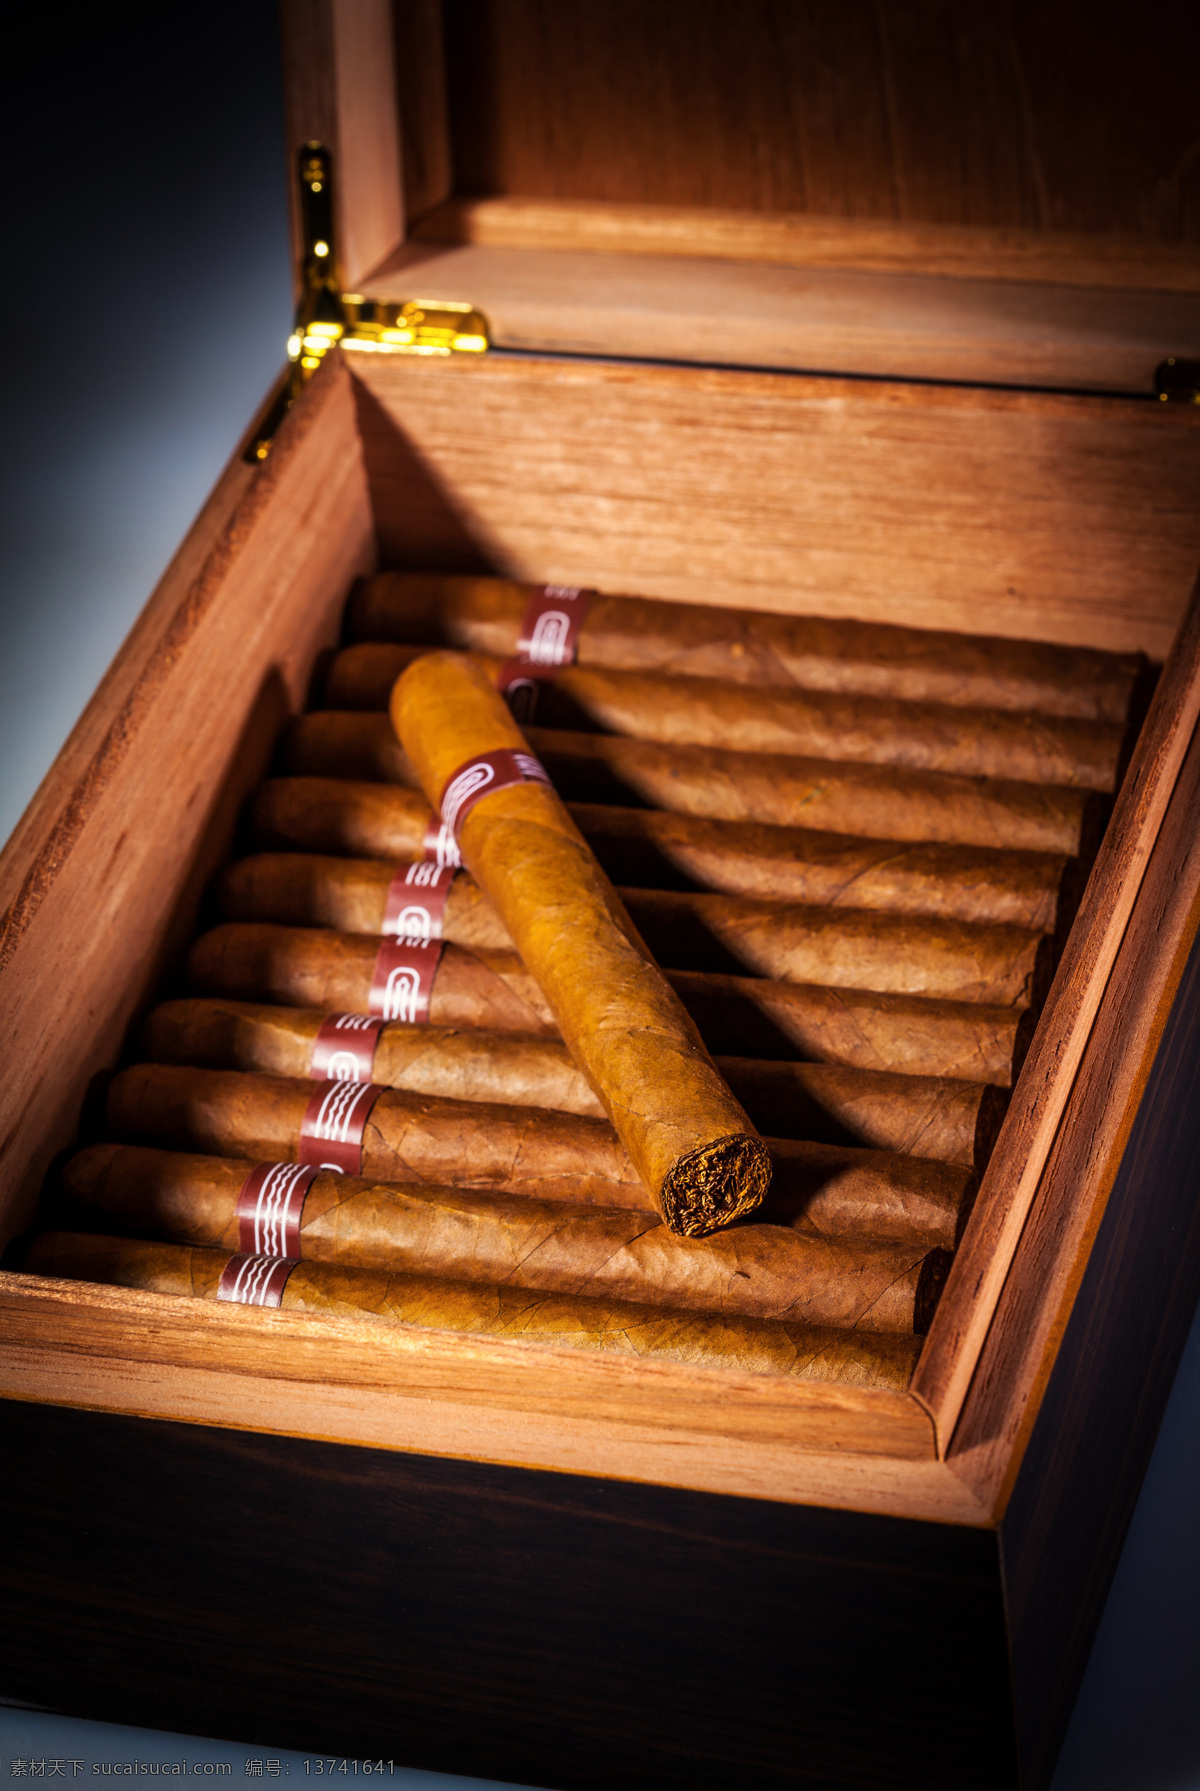 木 盒子 里 雪茄 香烟 高档雪茄 雪茄摄影 木盒子 其他类别 生活百科